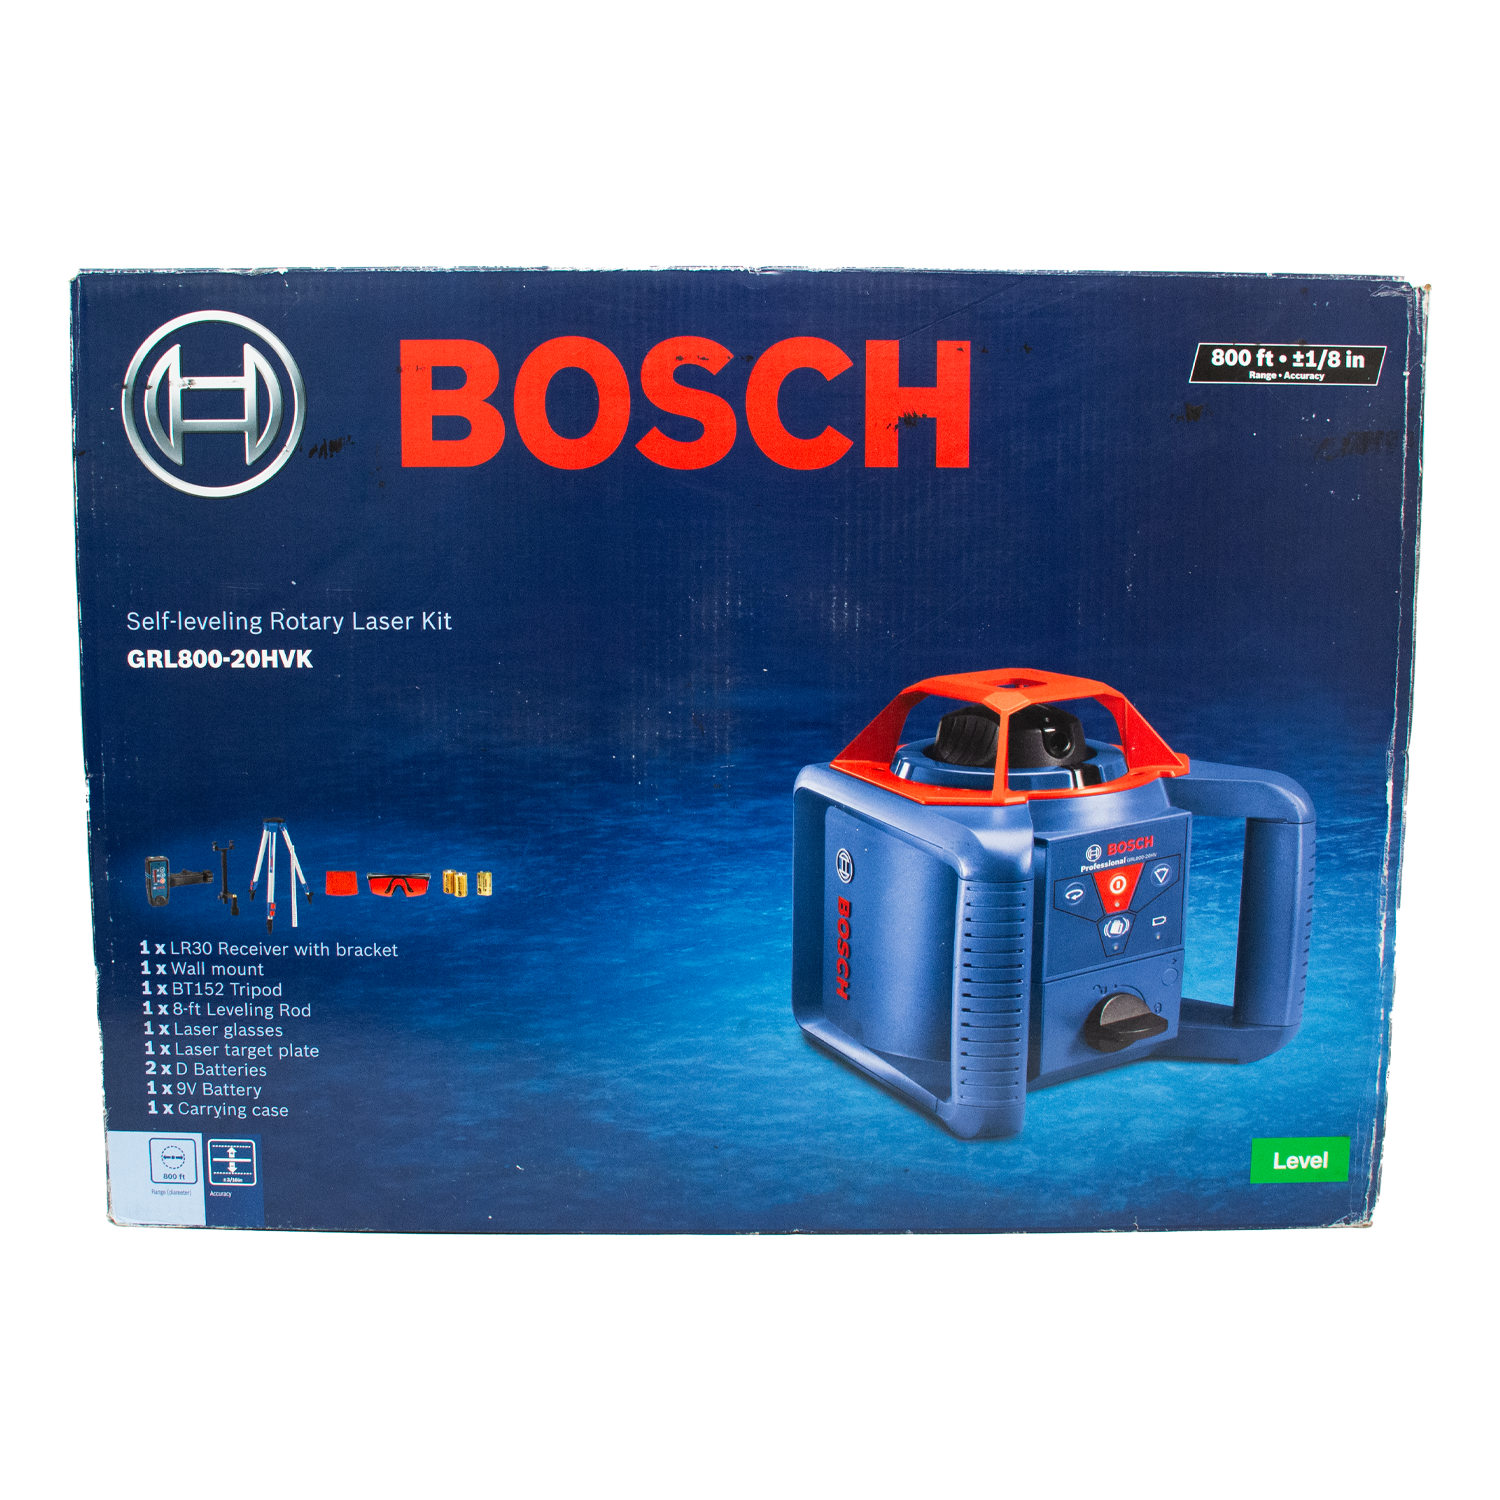 Bosch GRL800-20HVK Self Leveling 800ft Rotary Laser Kit